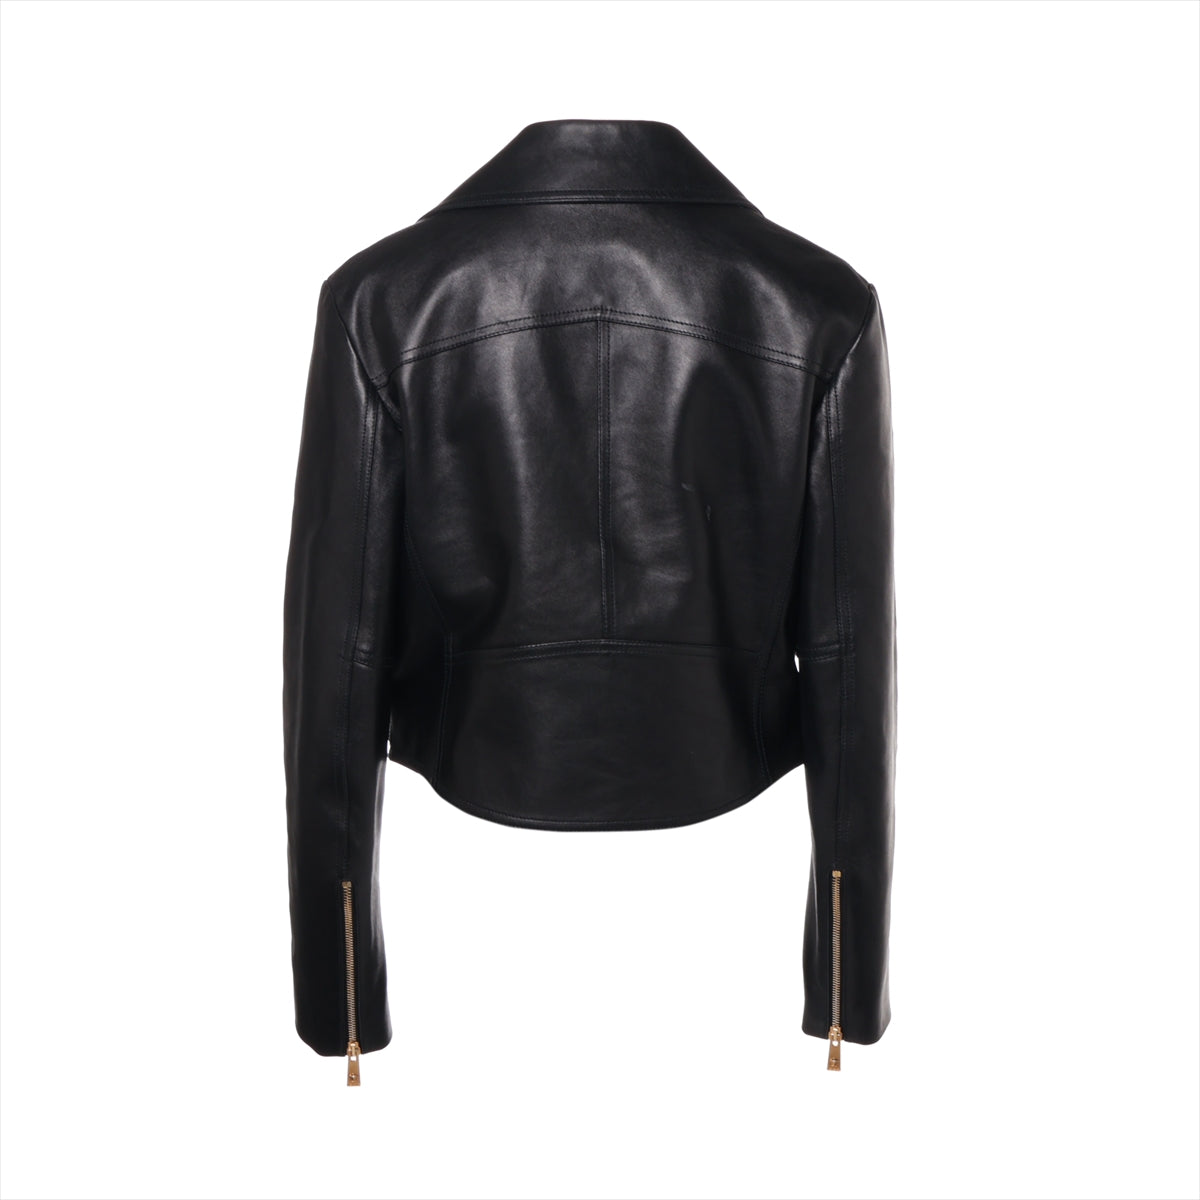 VERSACE Medusa Lam Leather jacket 40 Ladies' Black  1005845